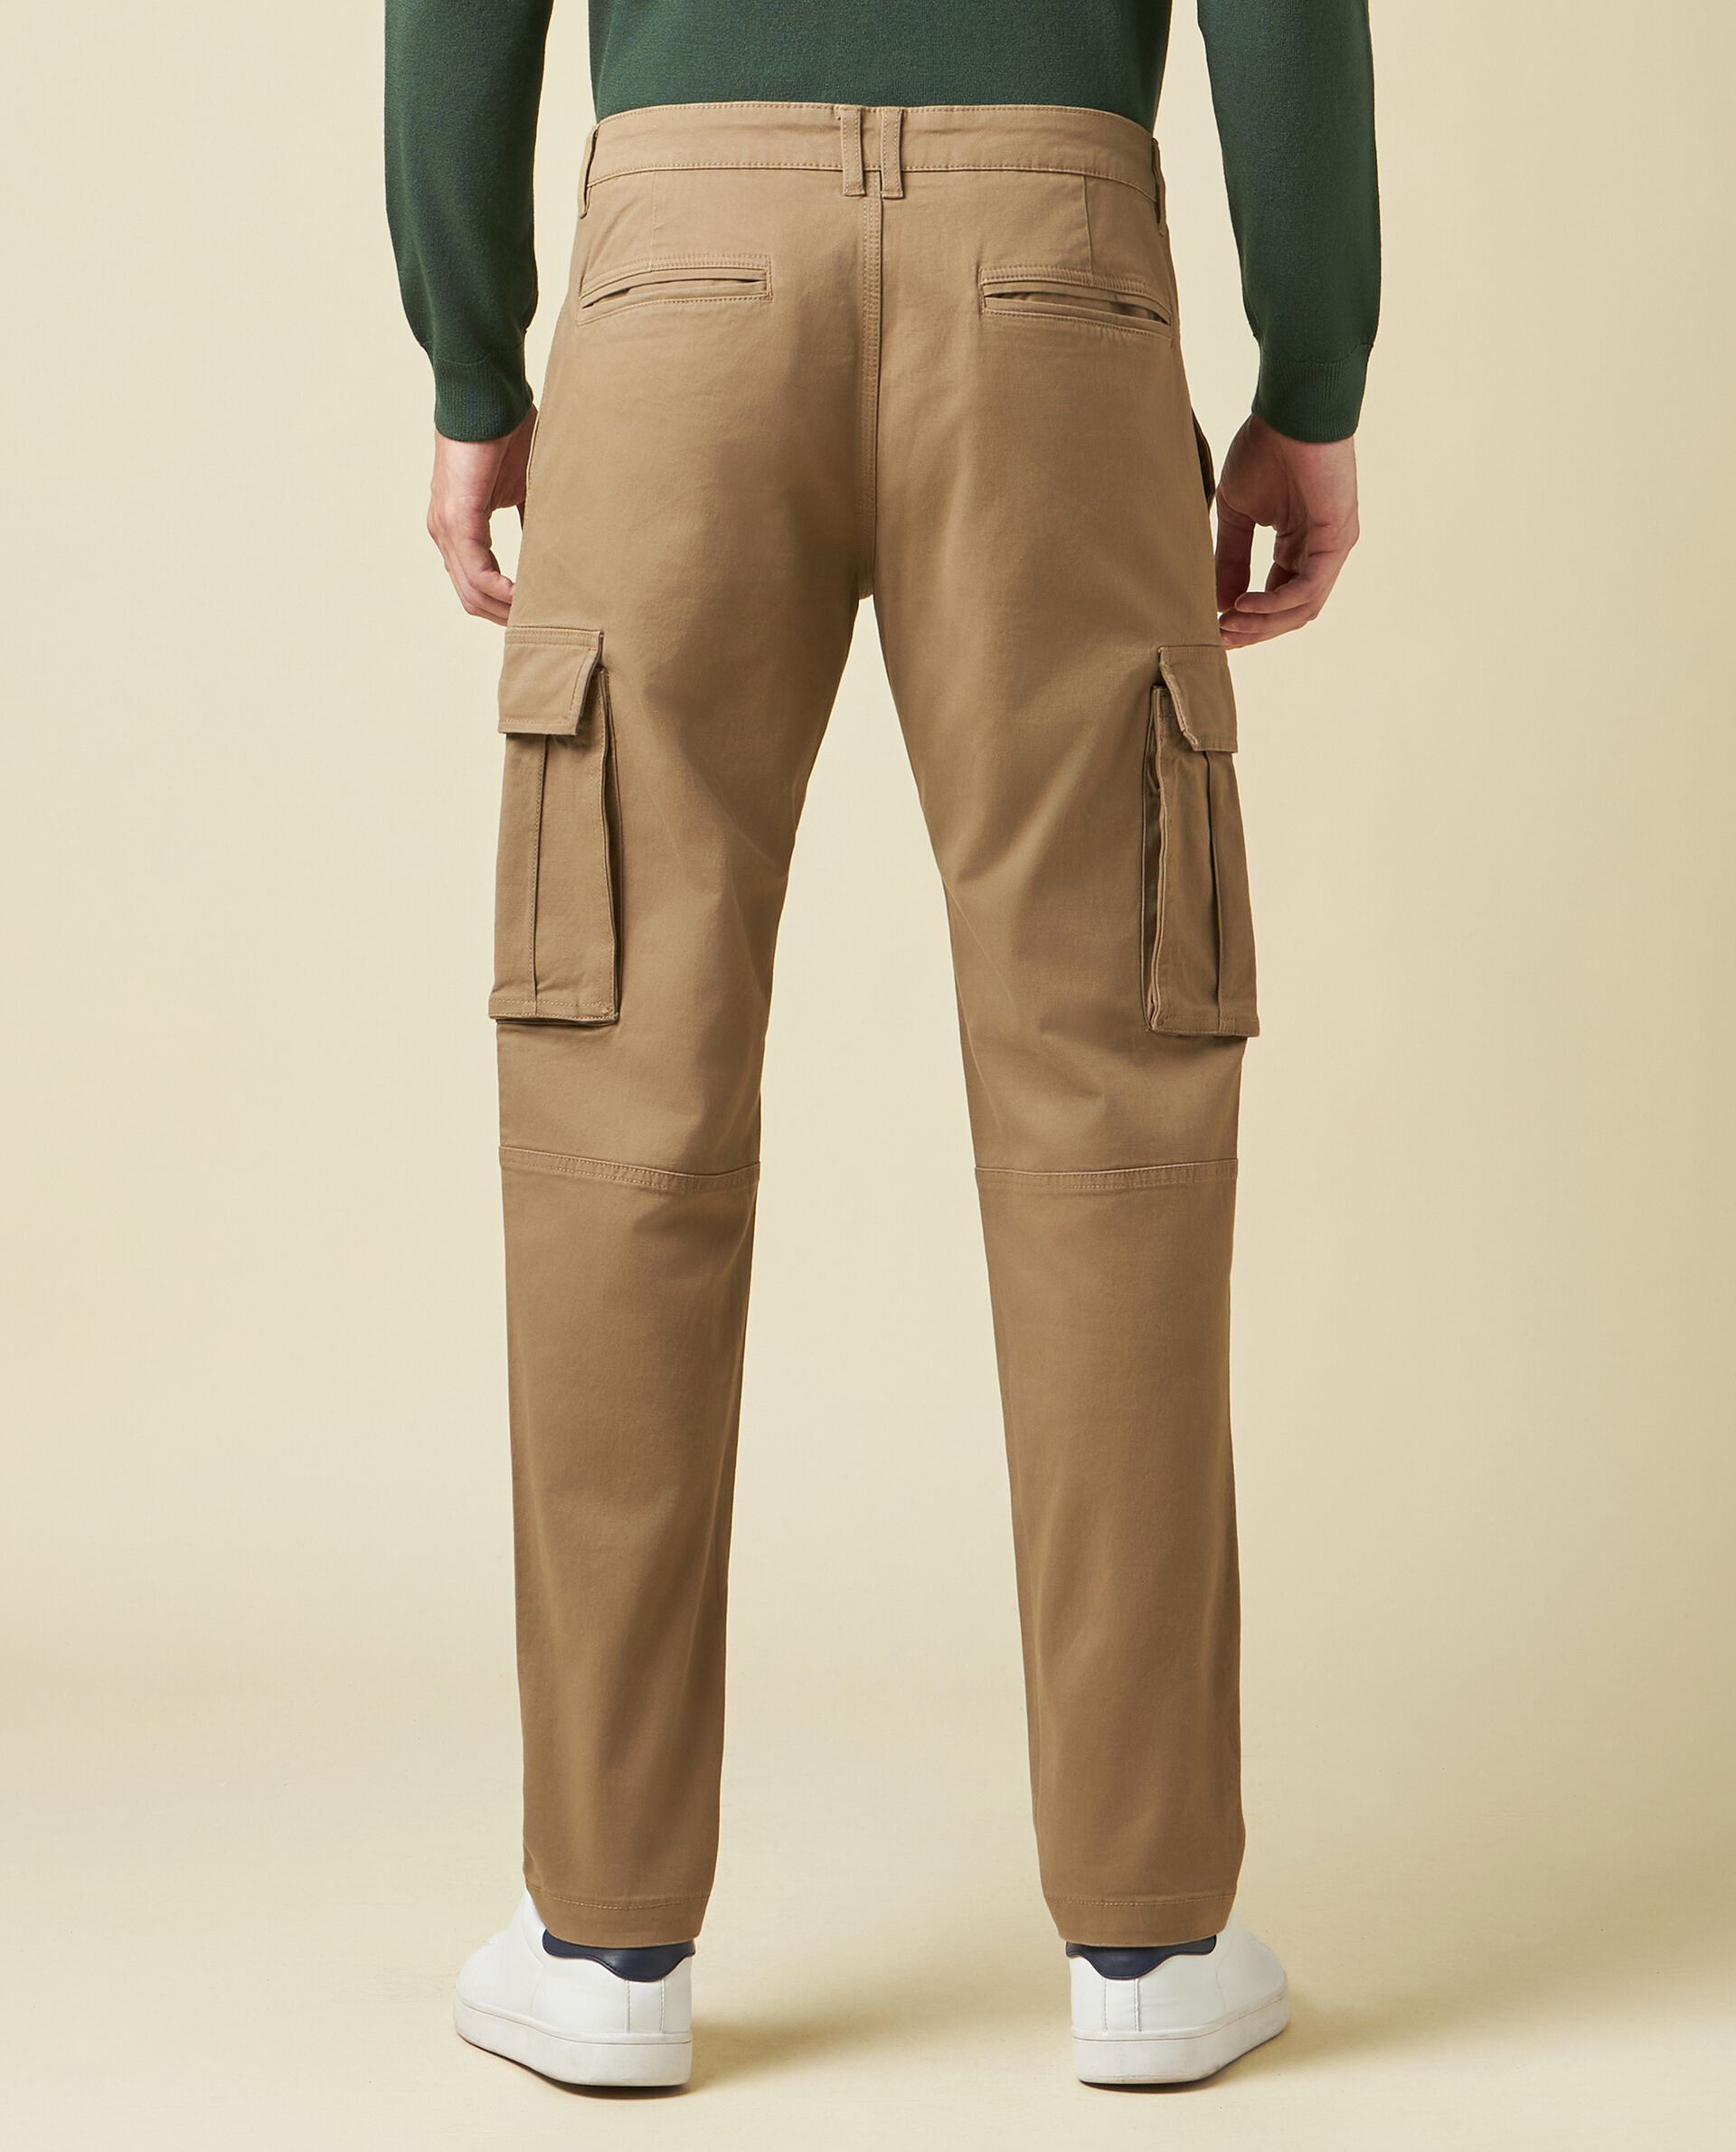 Pantalone cargo in cotone stretch uomo